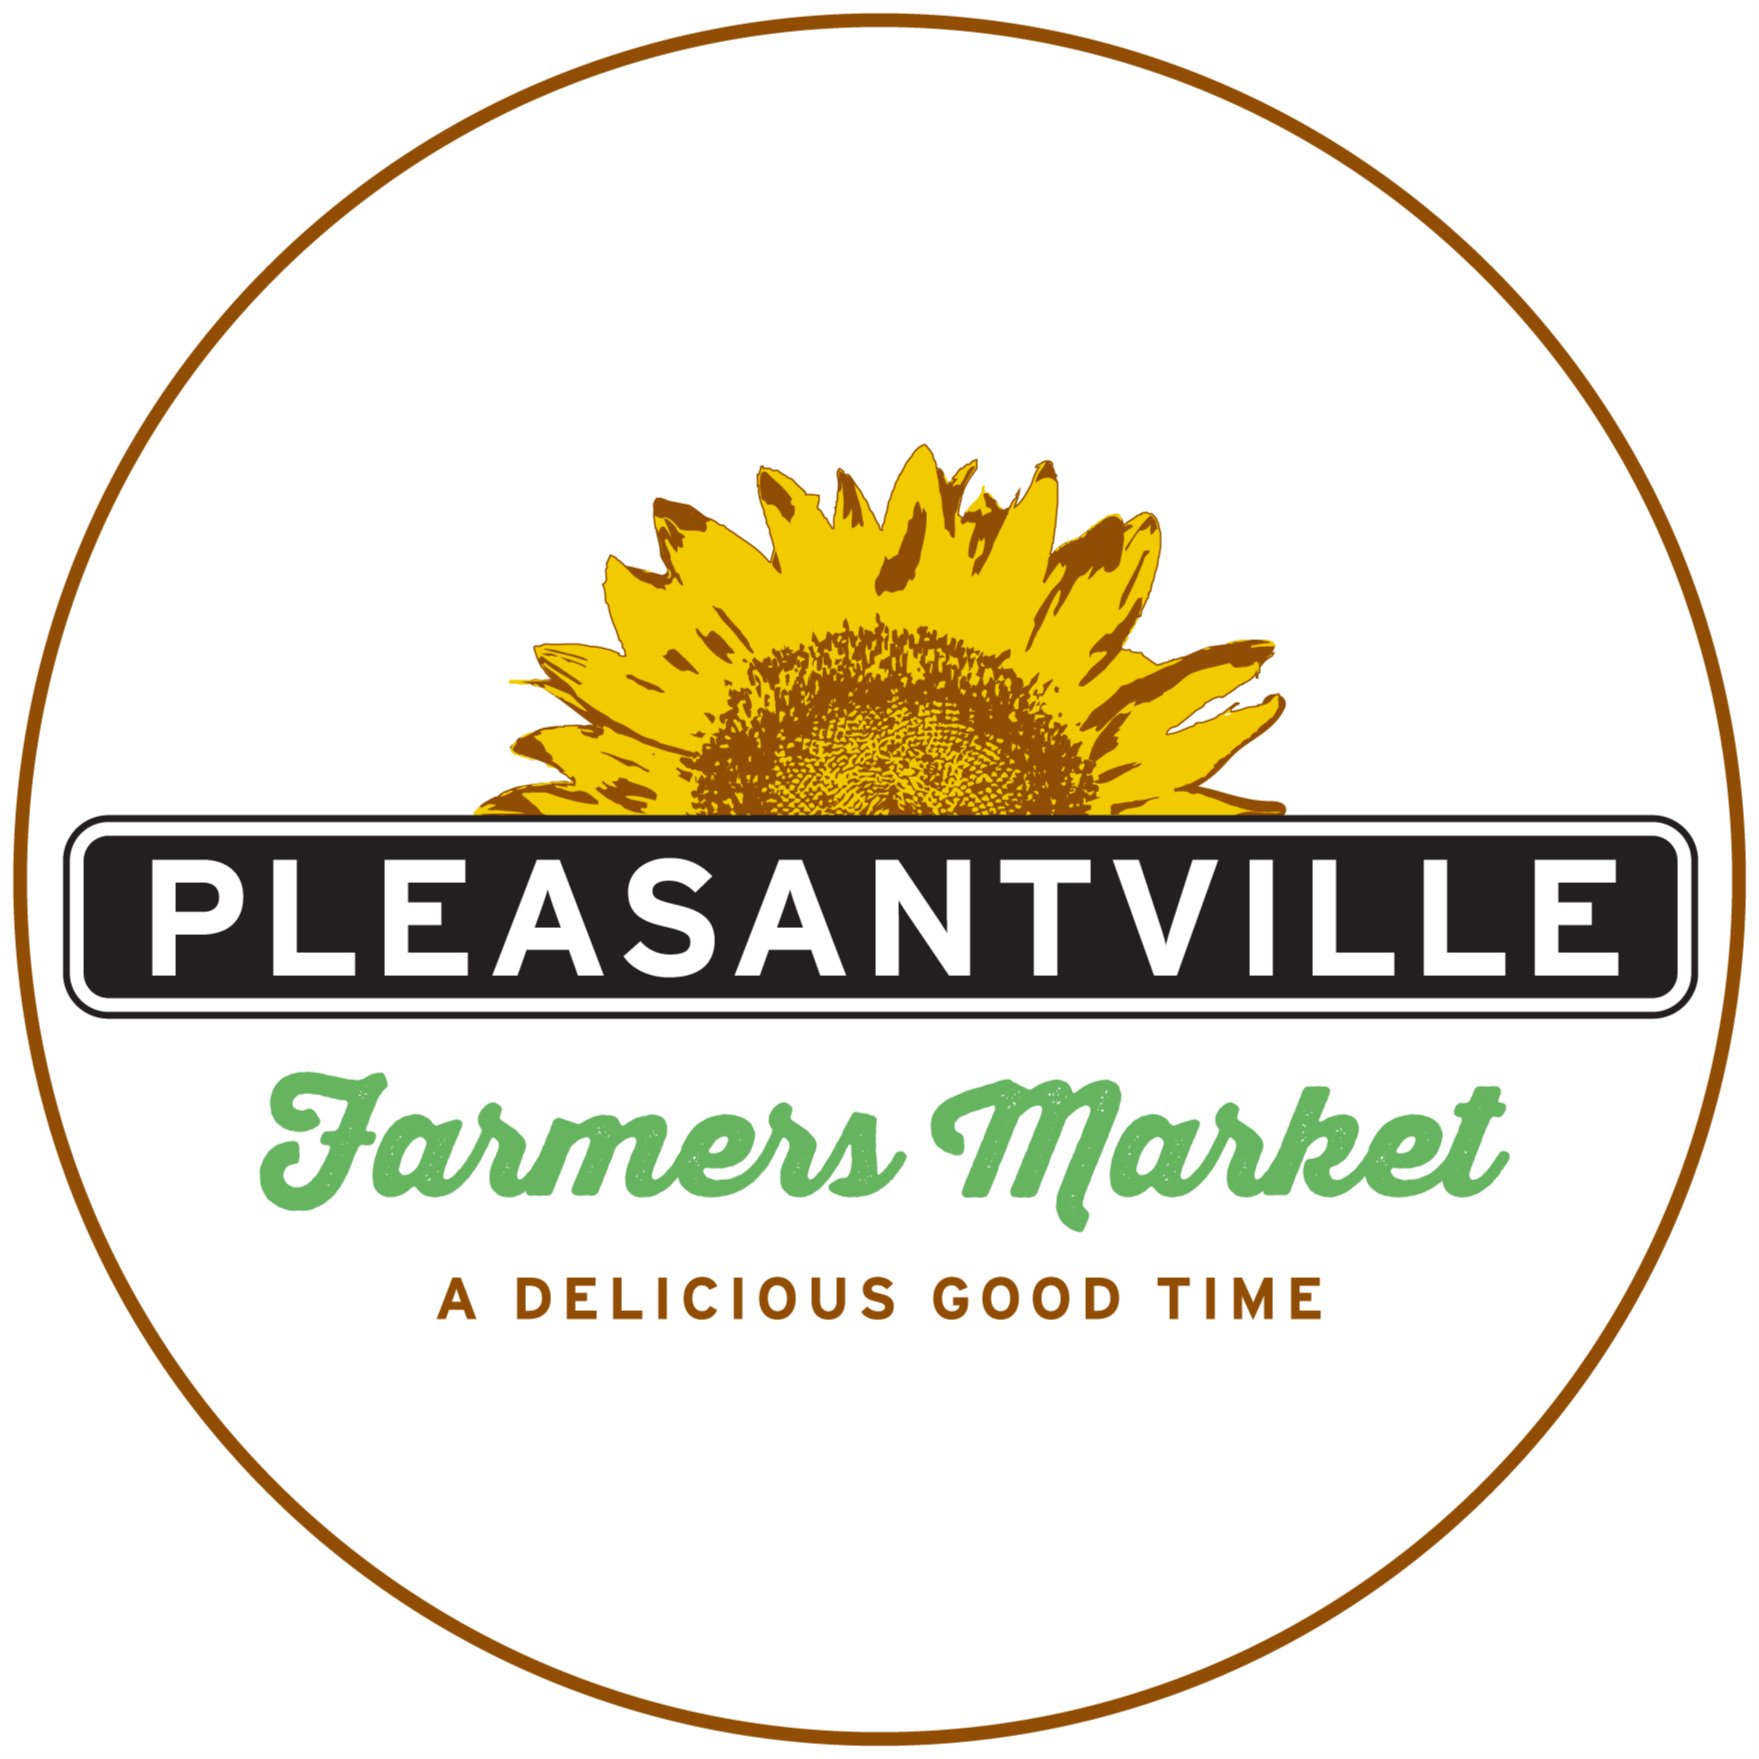 Pleasantville Farmers Market